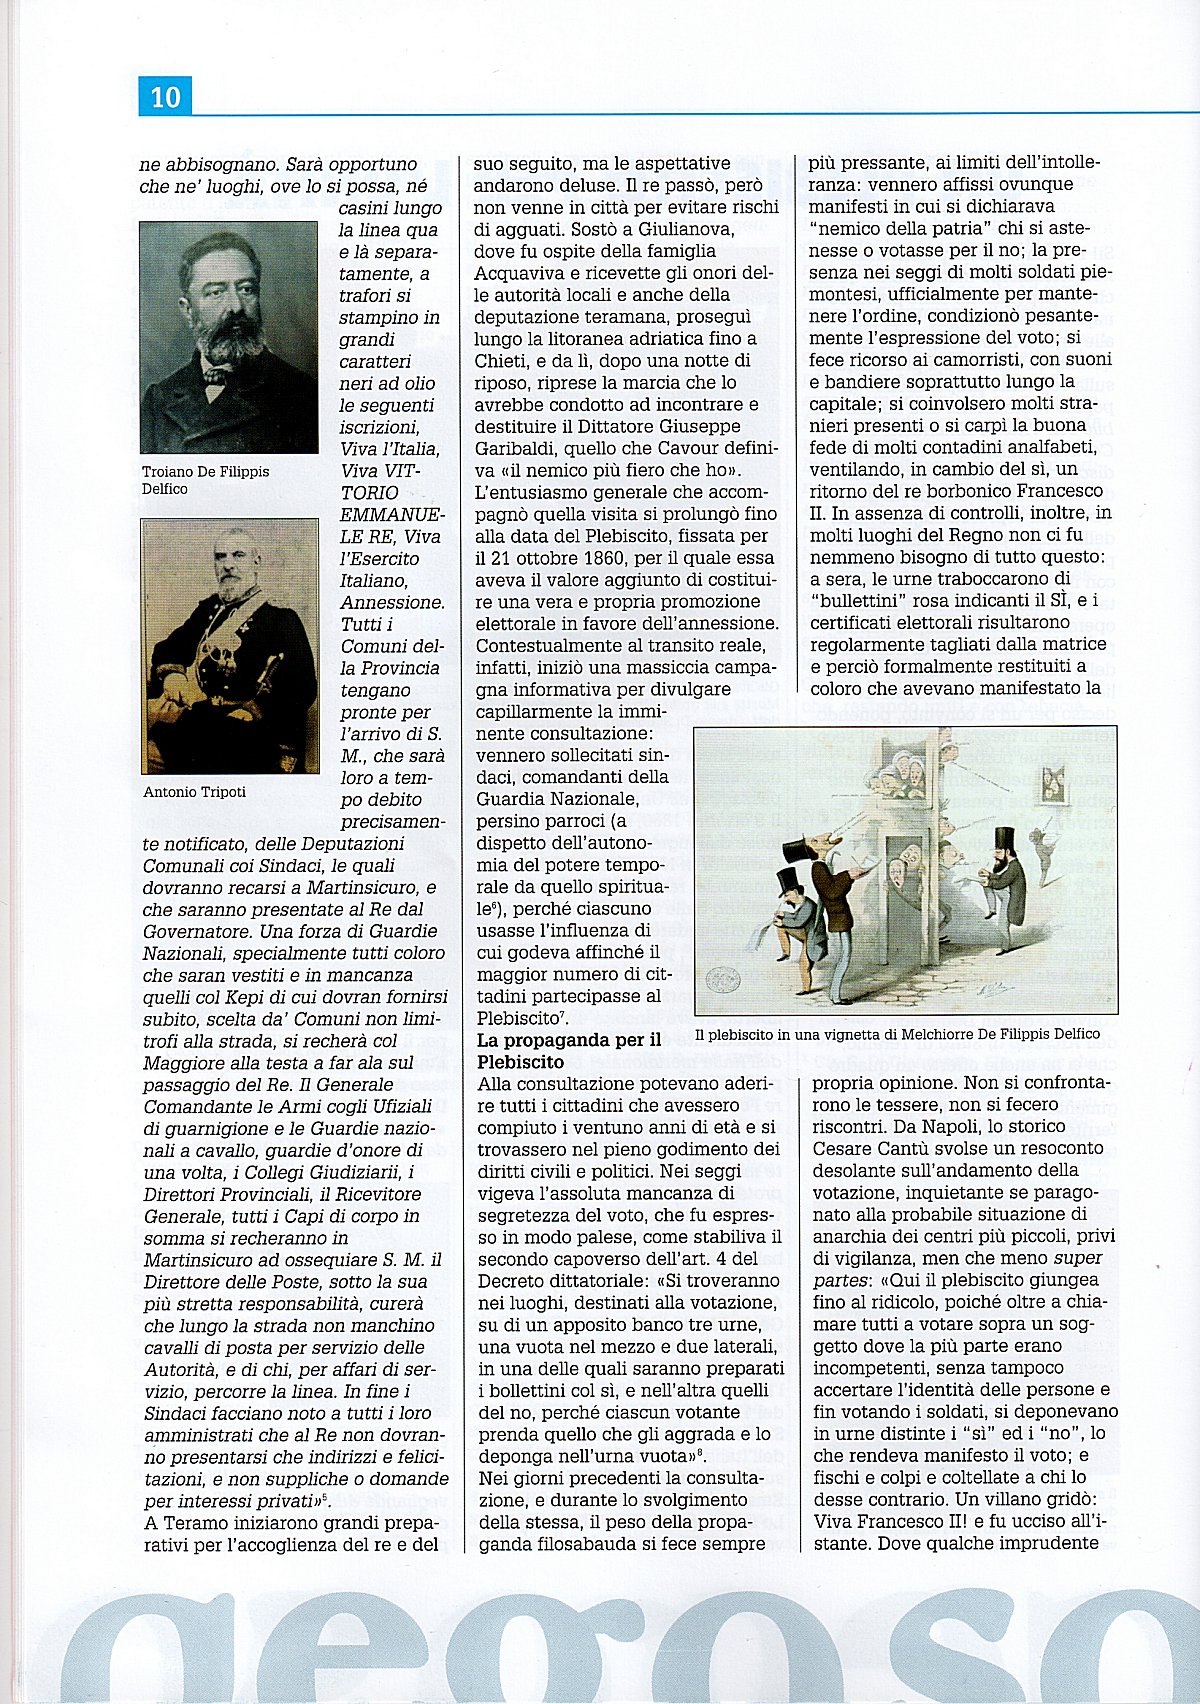 "Pegaso", n.15 / 21 maggio 2011, pag. 10